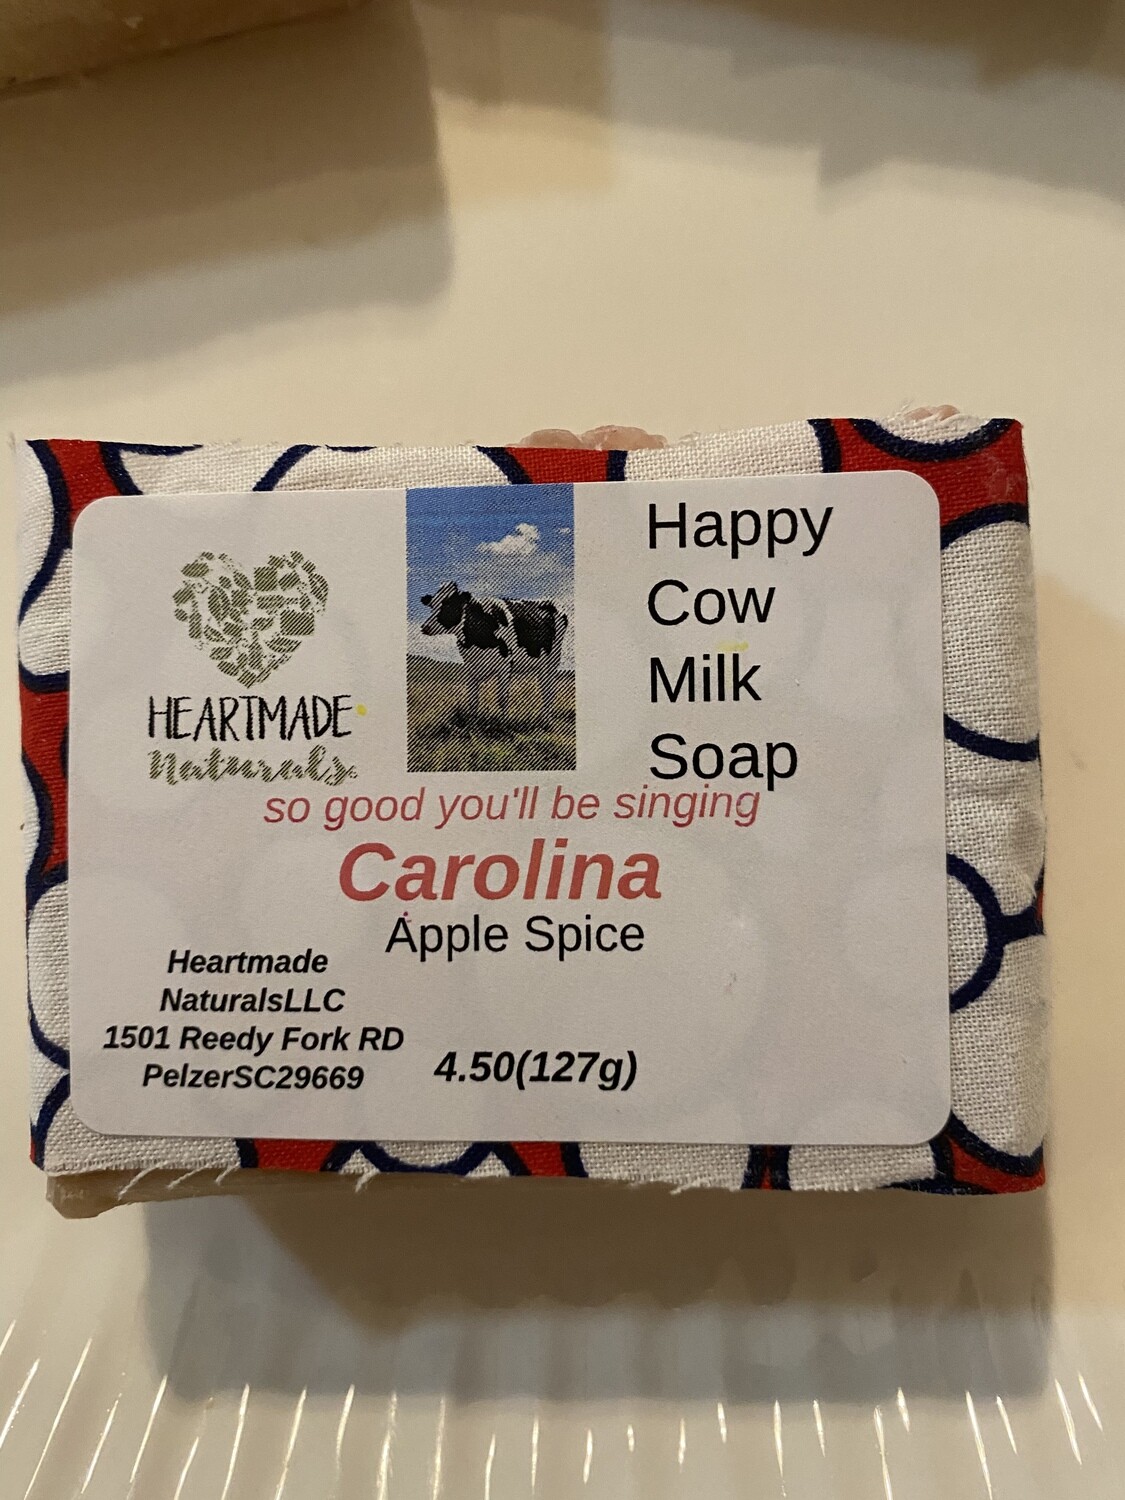 Happy Cow Milk Soap Carolina